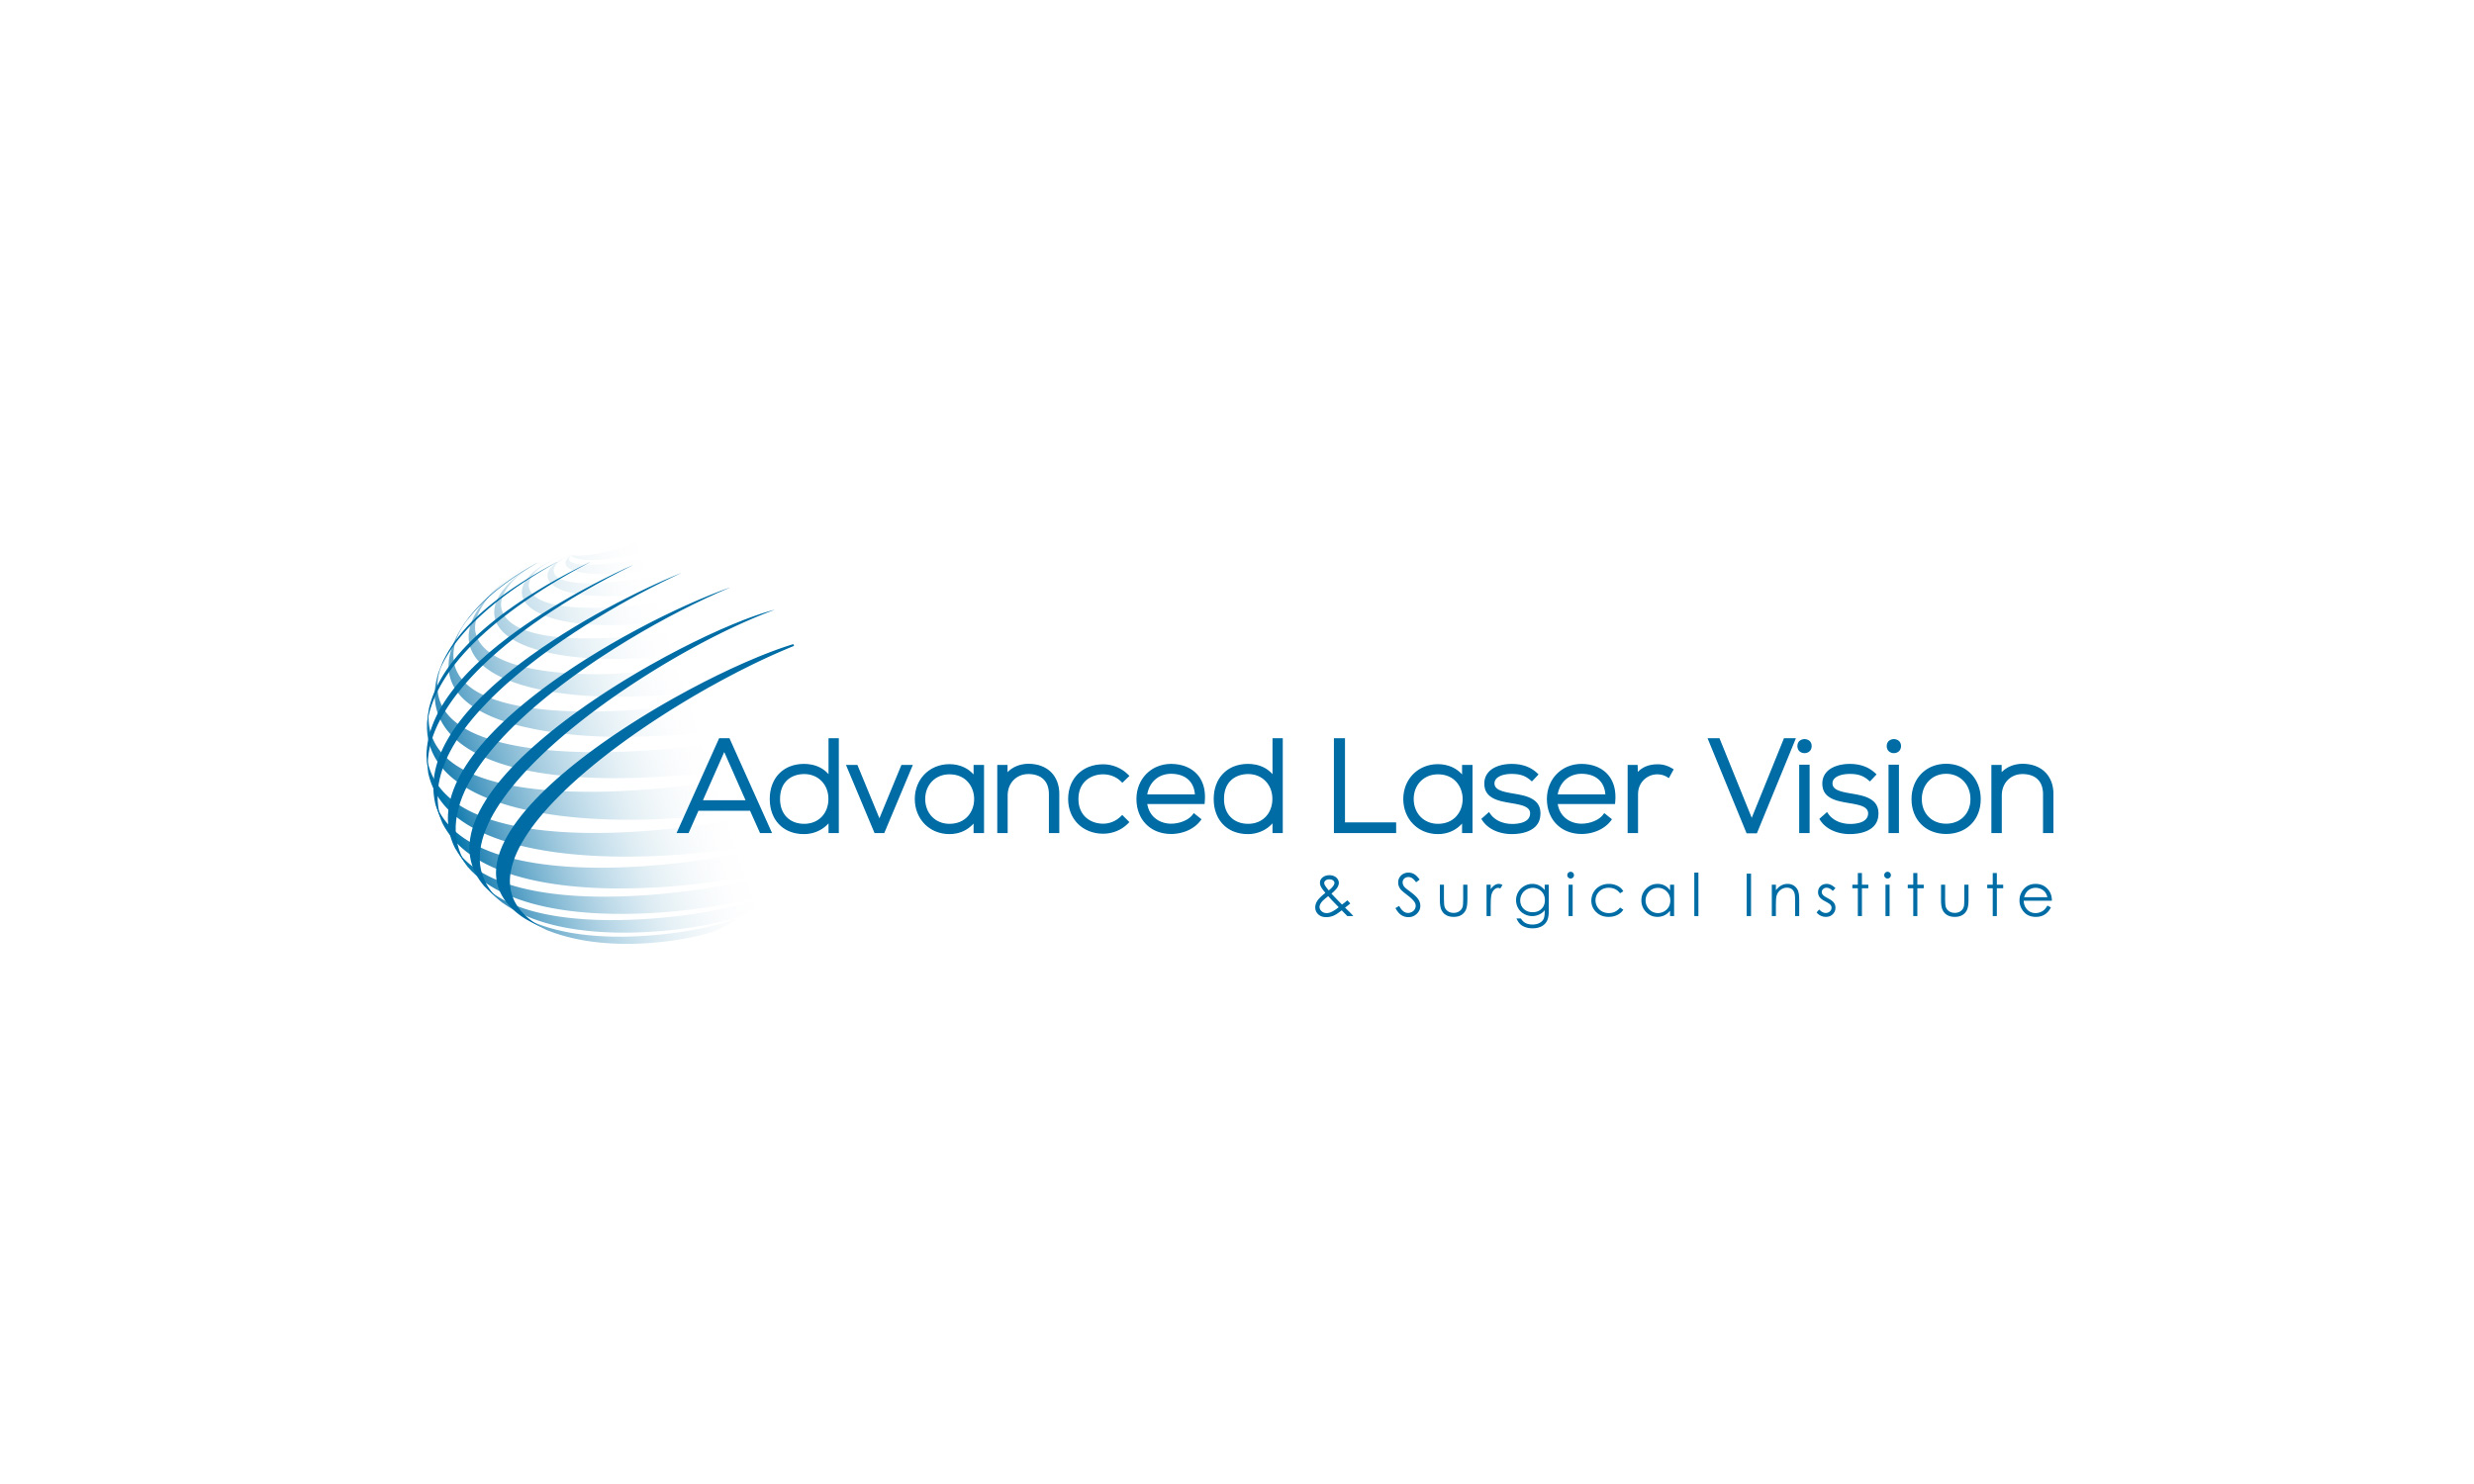 Logo Design Advanced Laser Vision